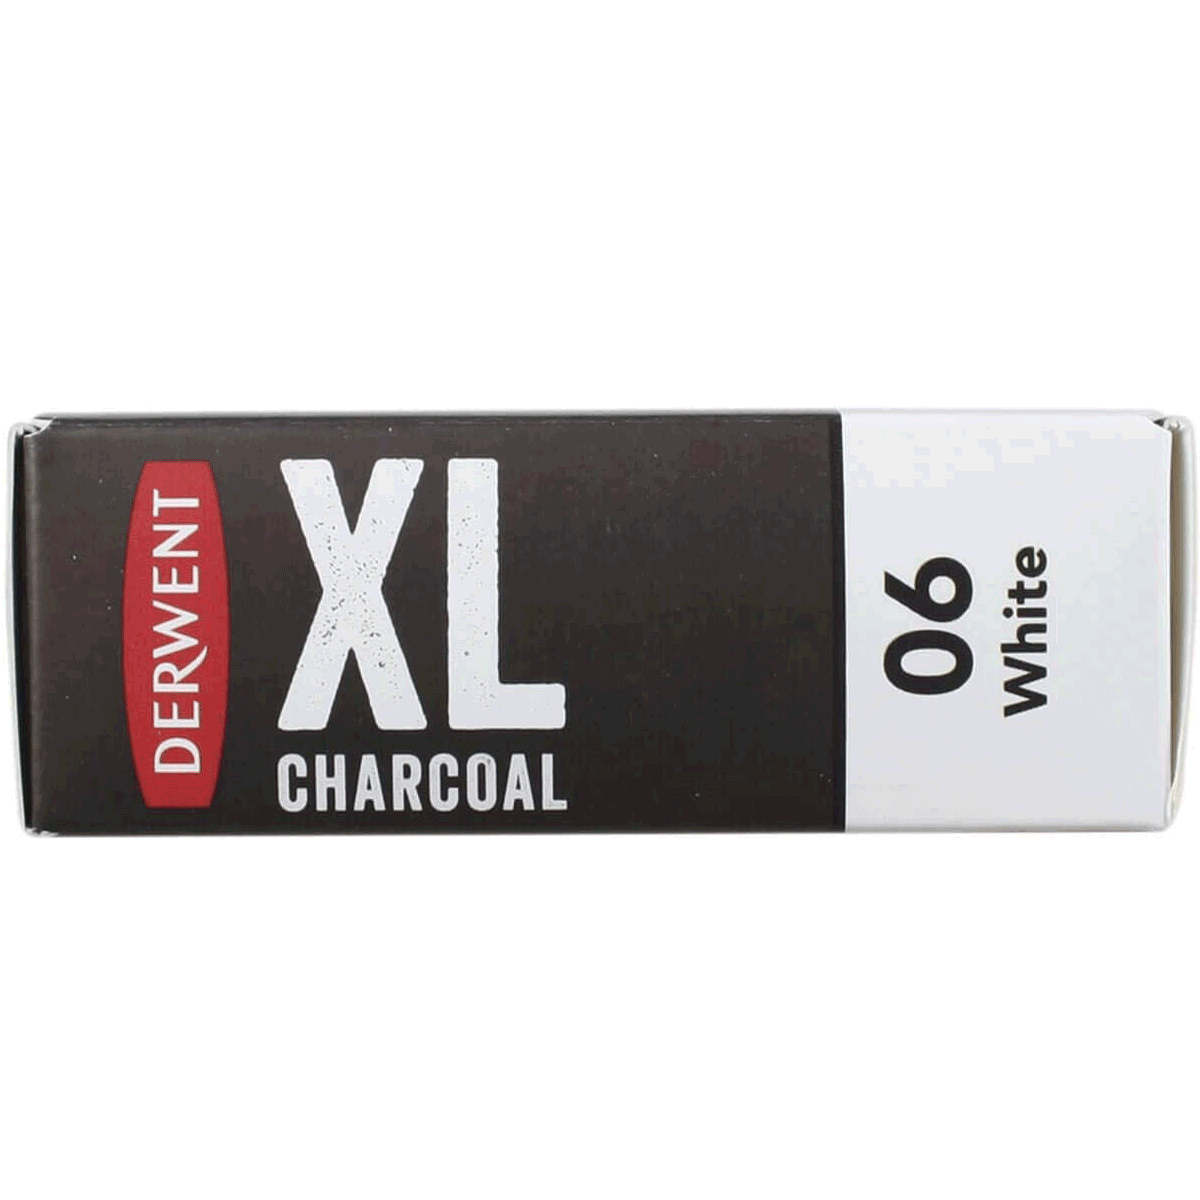 Derwent XL Charcoal Block White 06